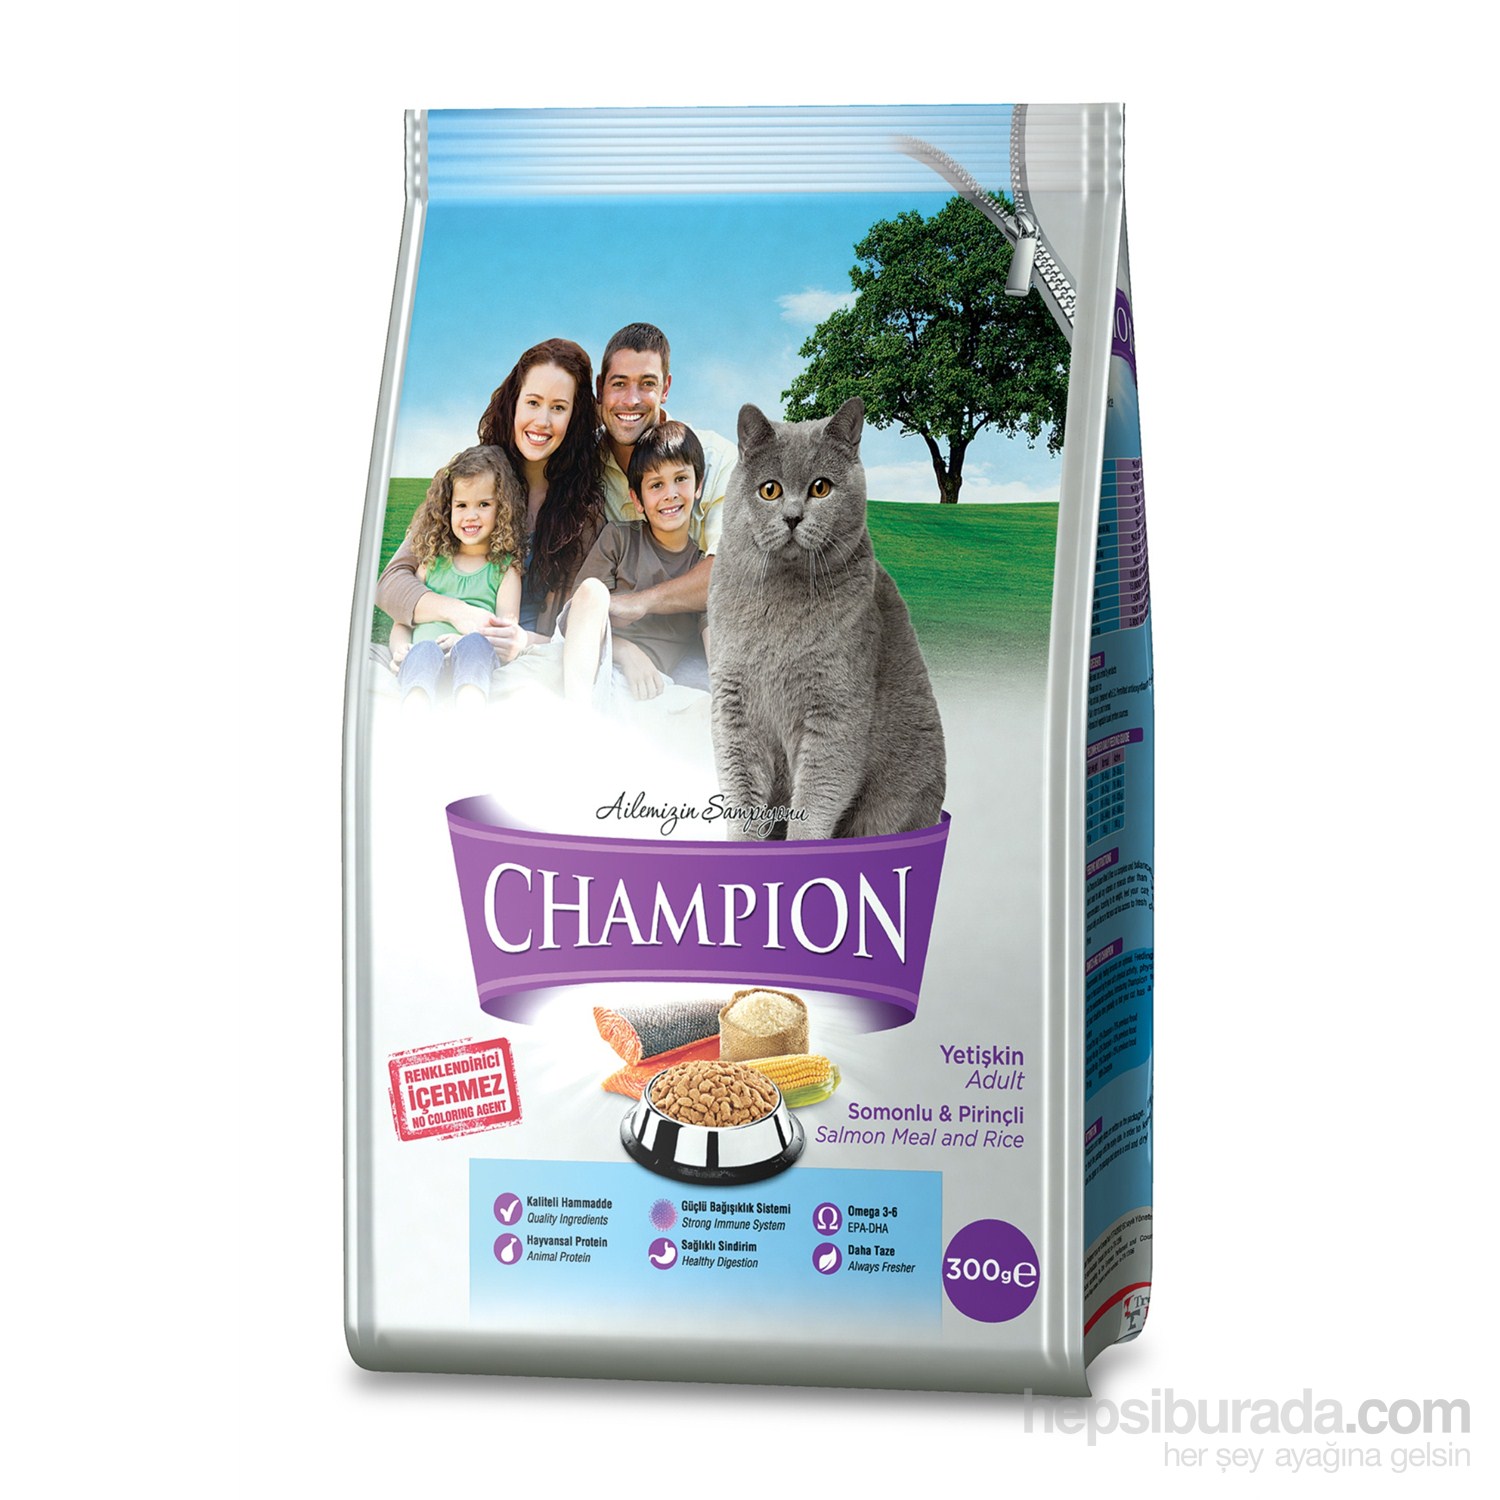 Champion Somonlu ve Pirinçli Kedi Maması 300 Gr